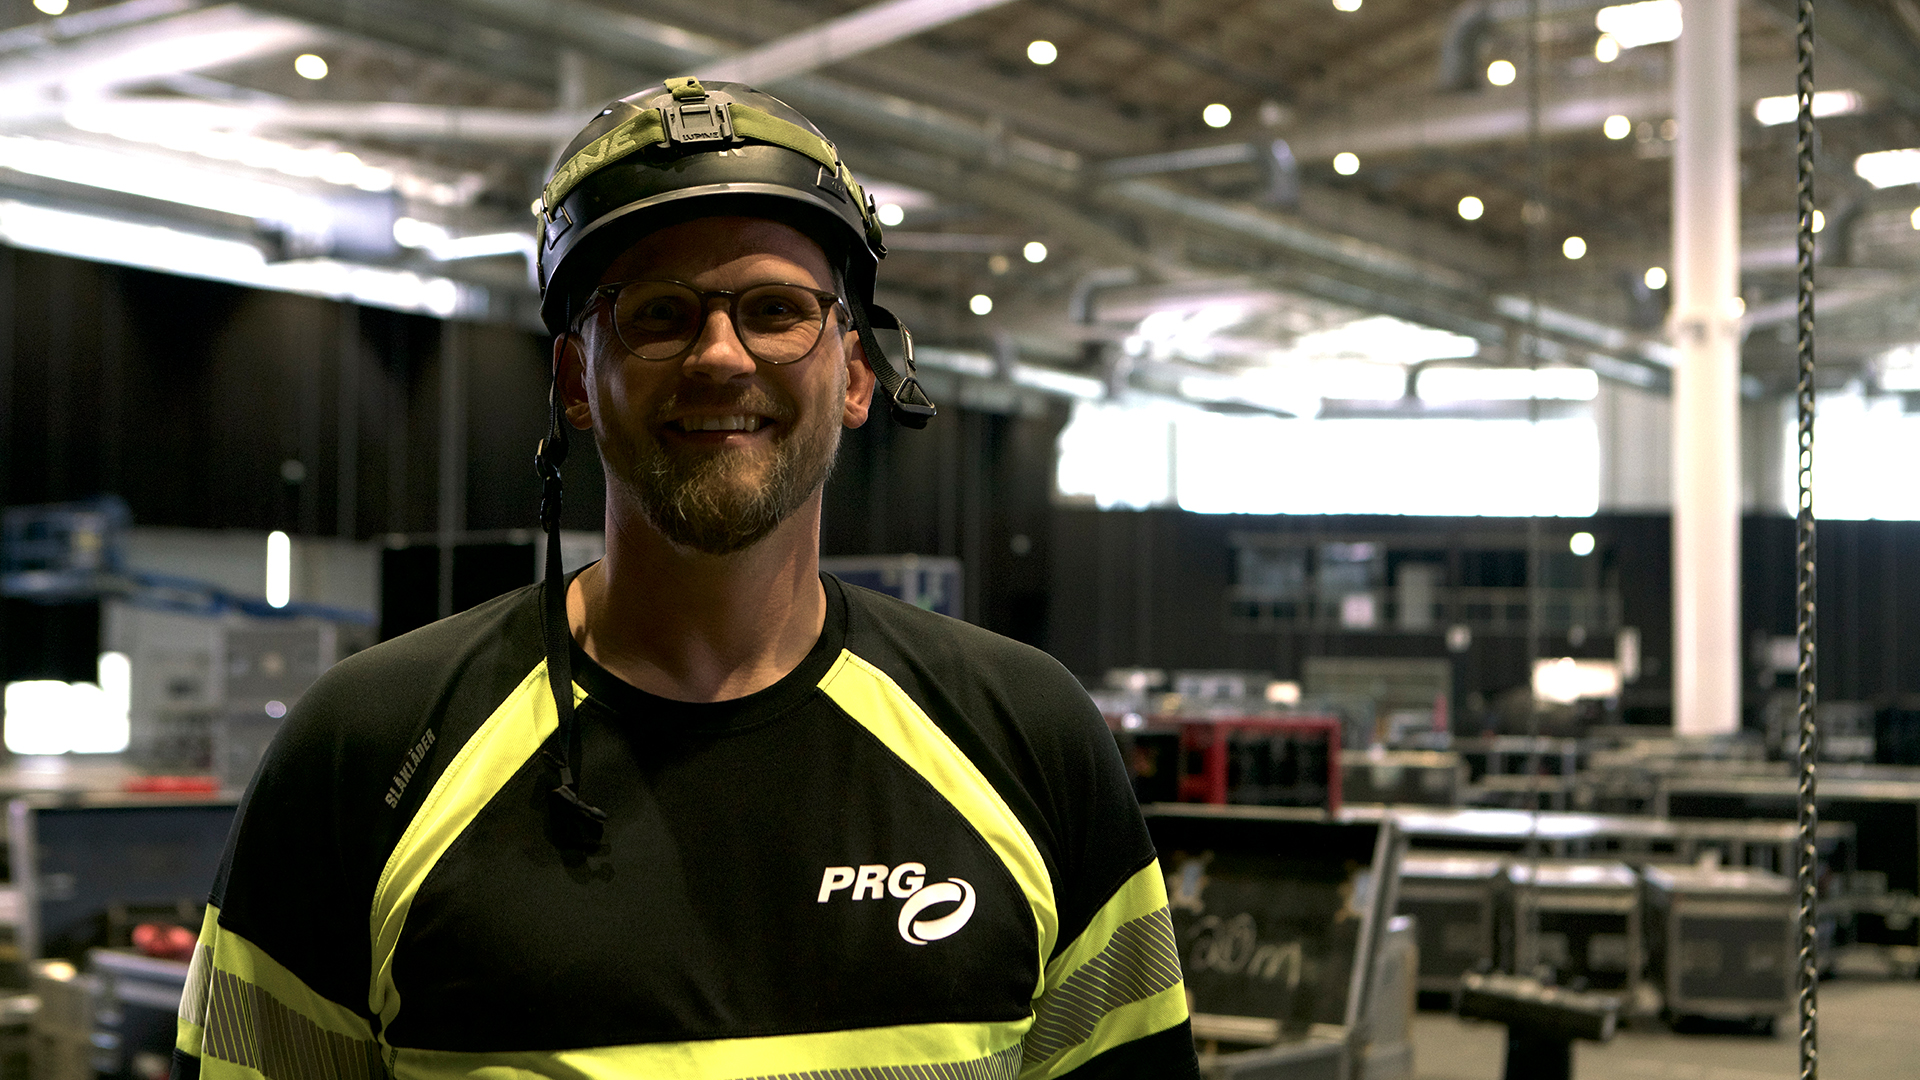 Conozca al equipo PRG en el OMR. Bastian Bensmann, nuestro experto en rigging en el evento.